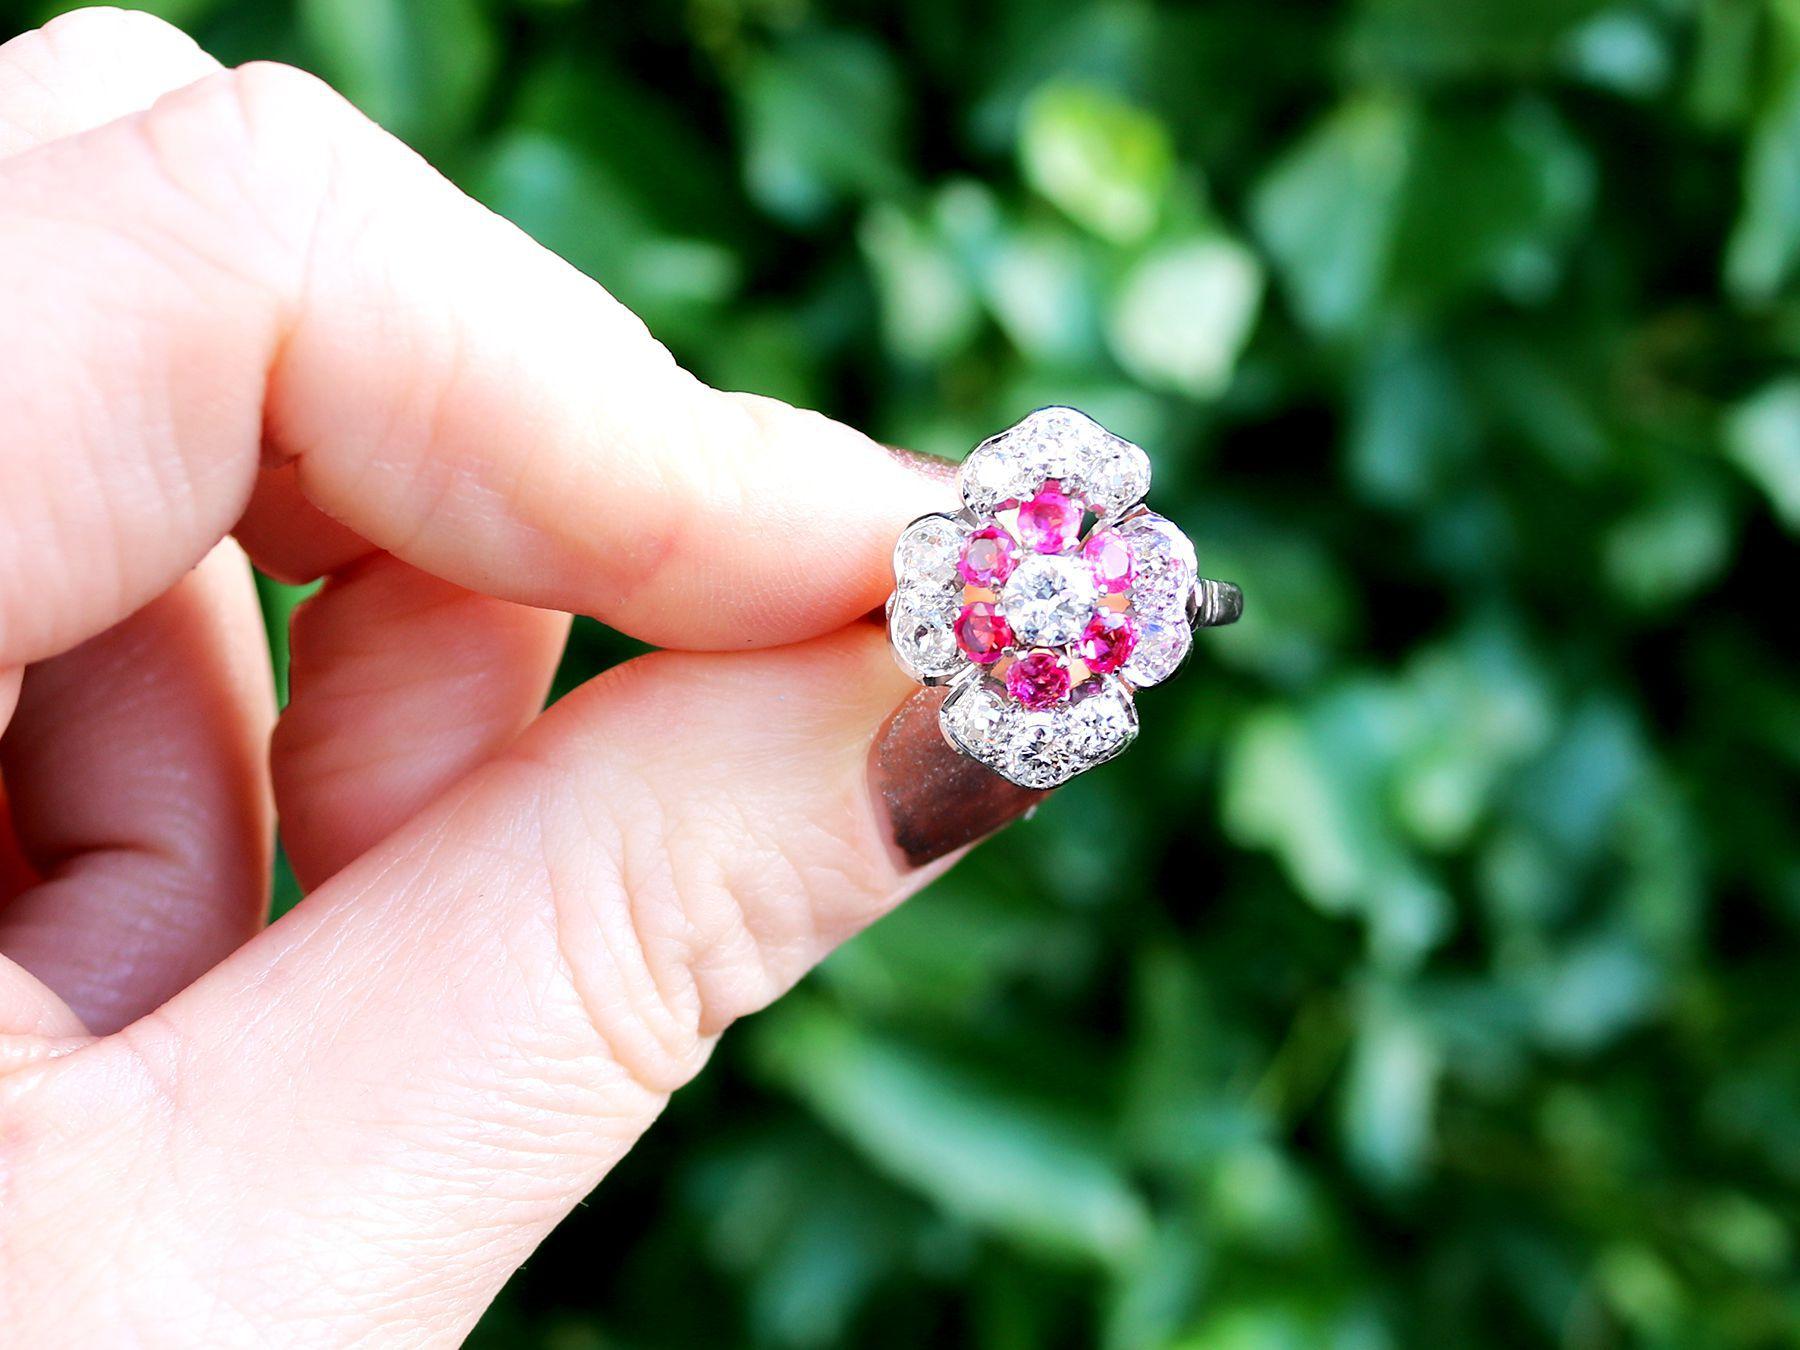 Ein beeindruckender Vintage-Ring mit einem Rubin von 0,72 Karat, einem Diamanten von 1,63 Karat und einem Kleid aus Platin; Teil unserer vielfältigen Rubinschmuck- und Nachlassschmuck-Kollektionen.

Dieser schöne und beeindruckende Rubinring im